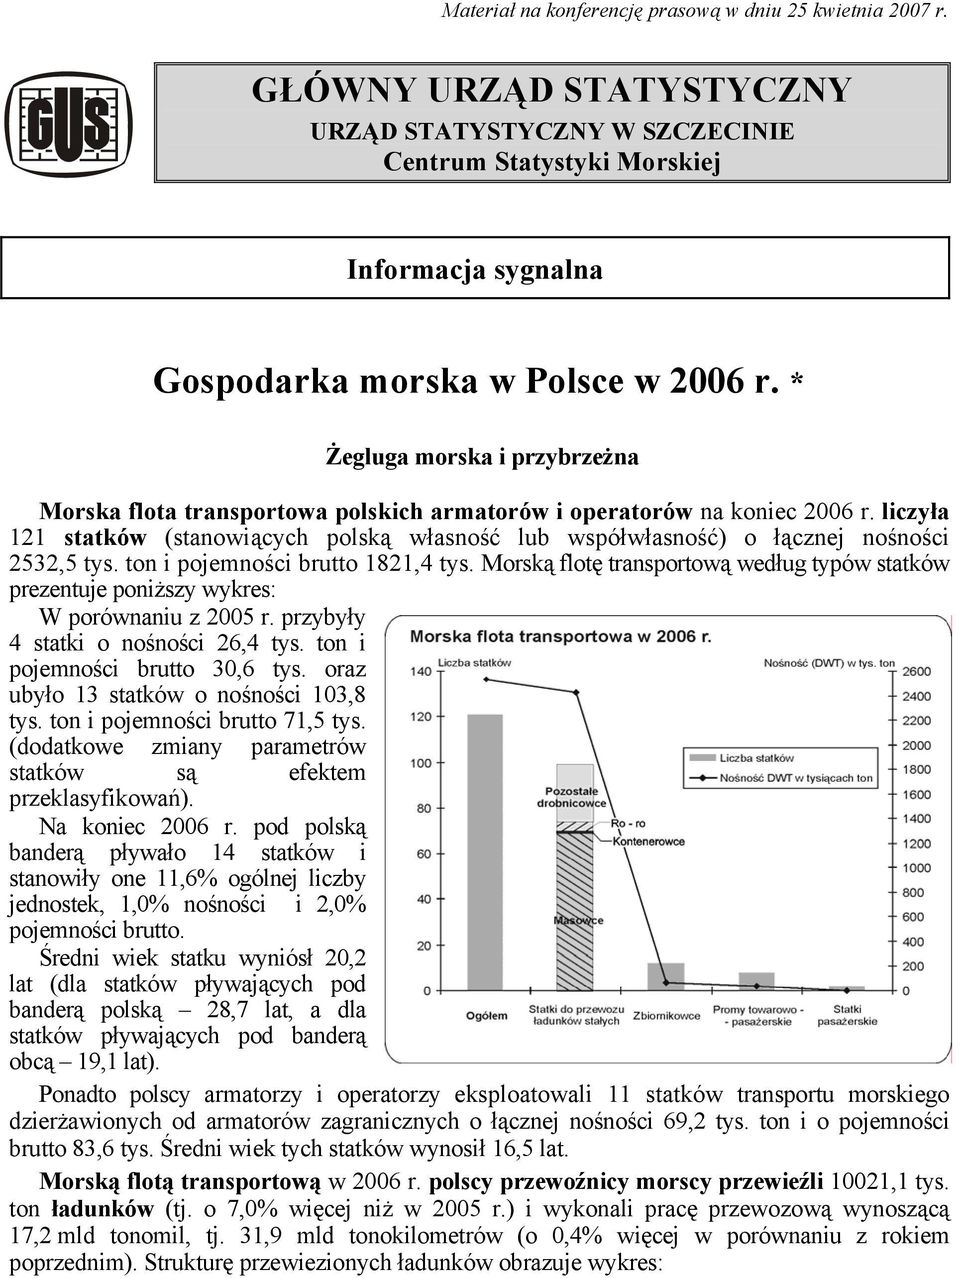 * Żegluga morska i przybrzeżna Morska flota transportowa polskich armatorów i operatorów na koniec 2006 r.